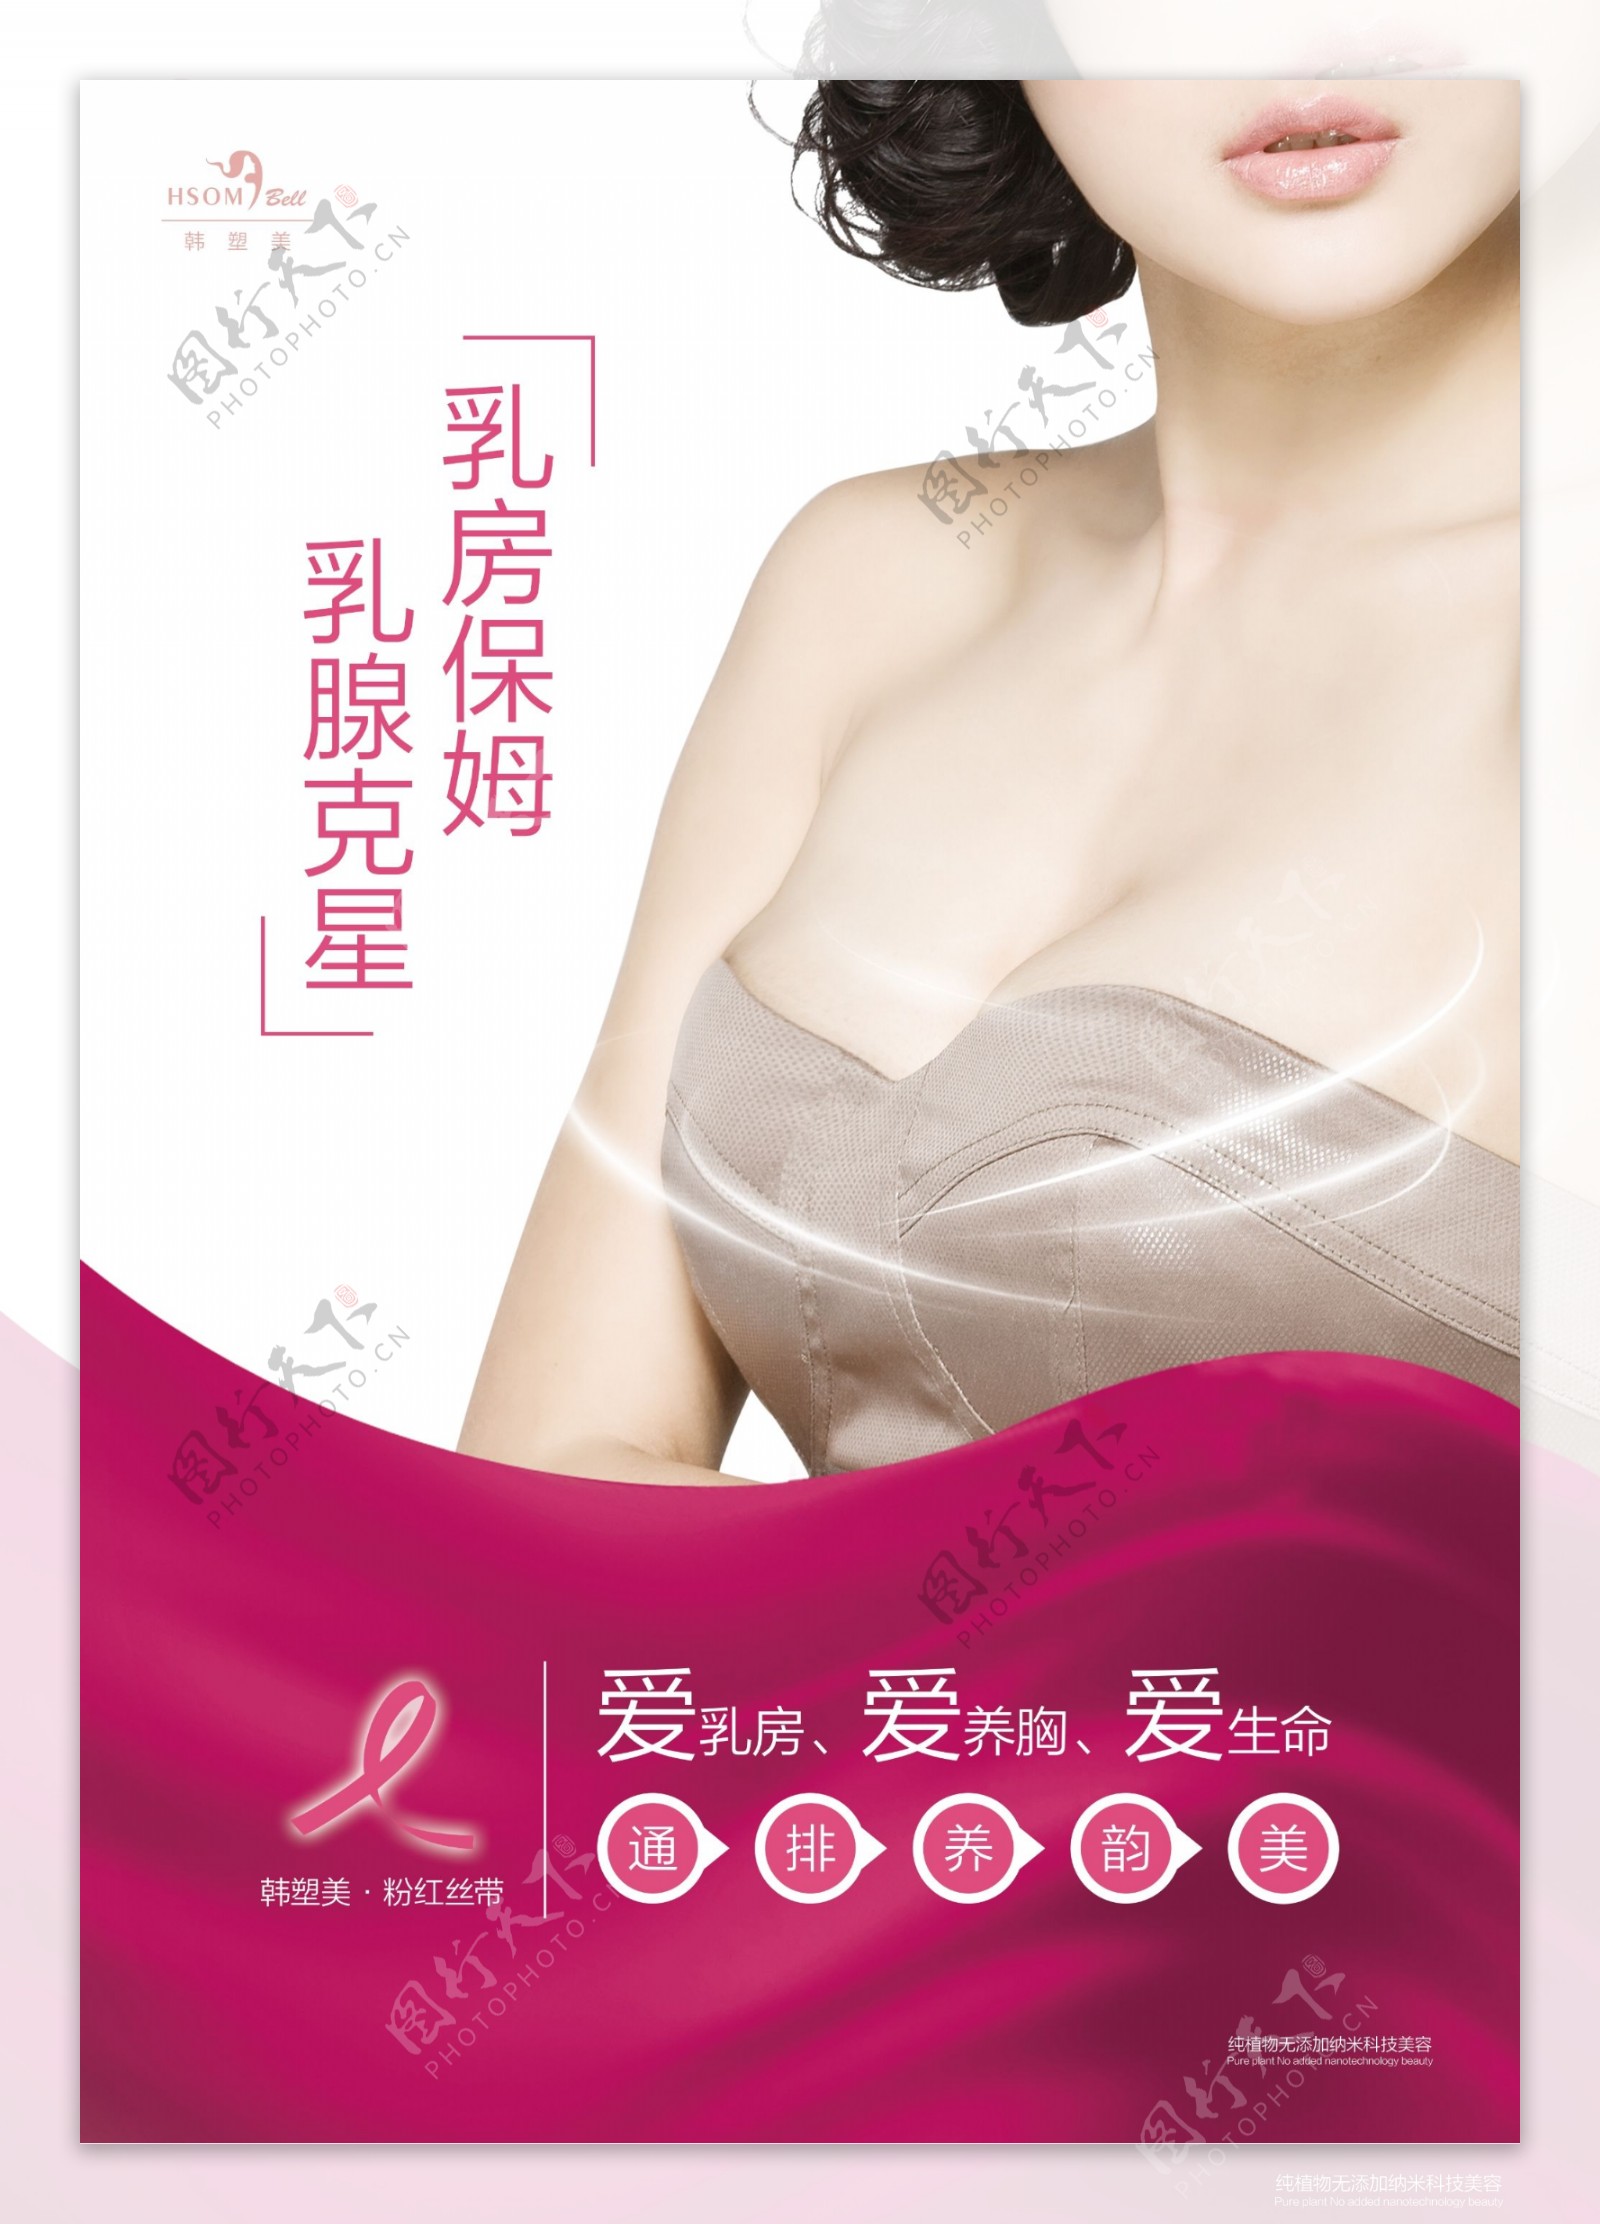 11韩塑美乳房养护